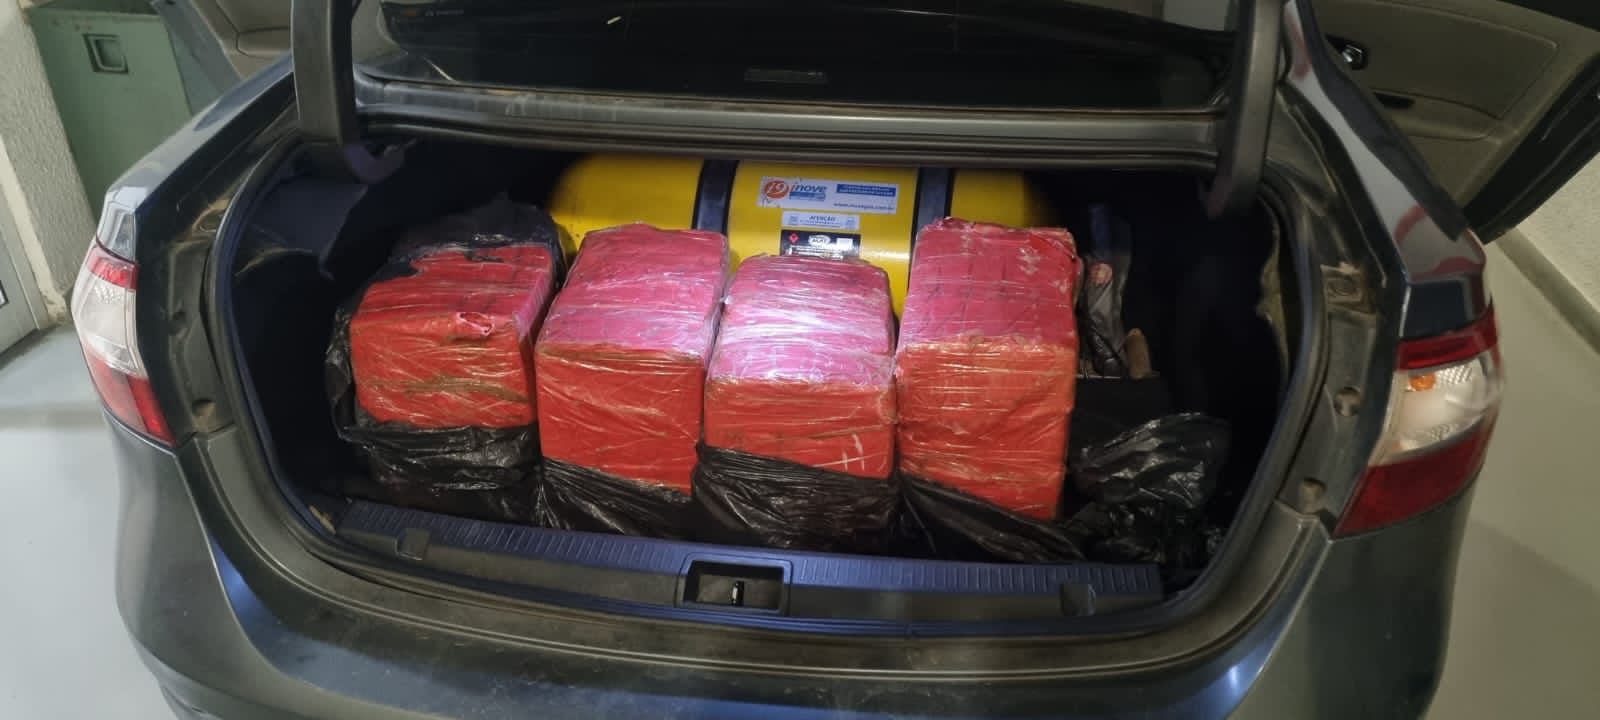 Policial é preso por transportar 200 kg de maconha